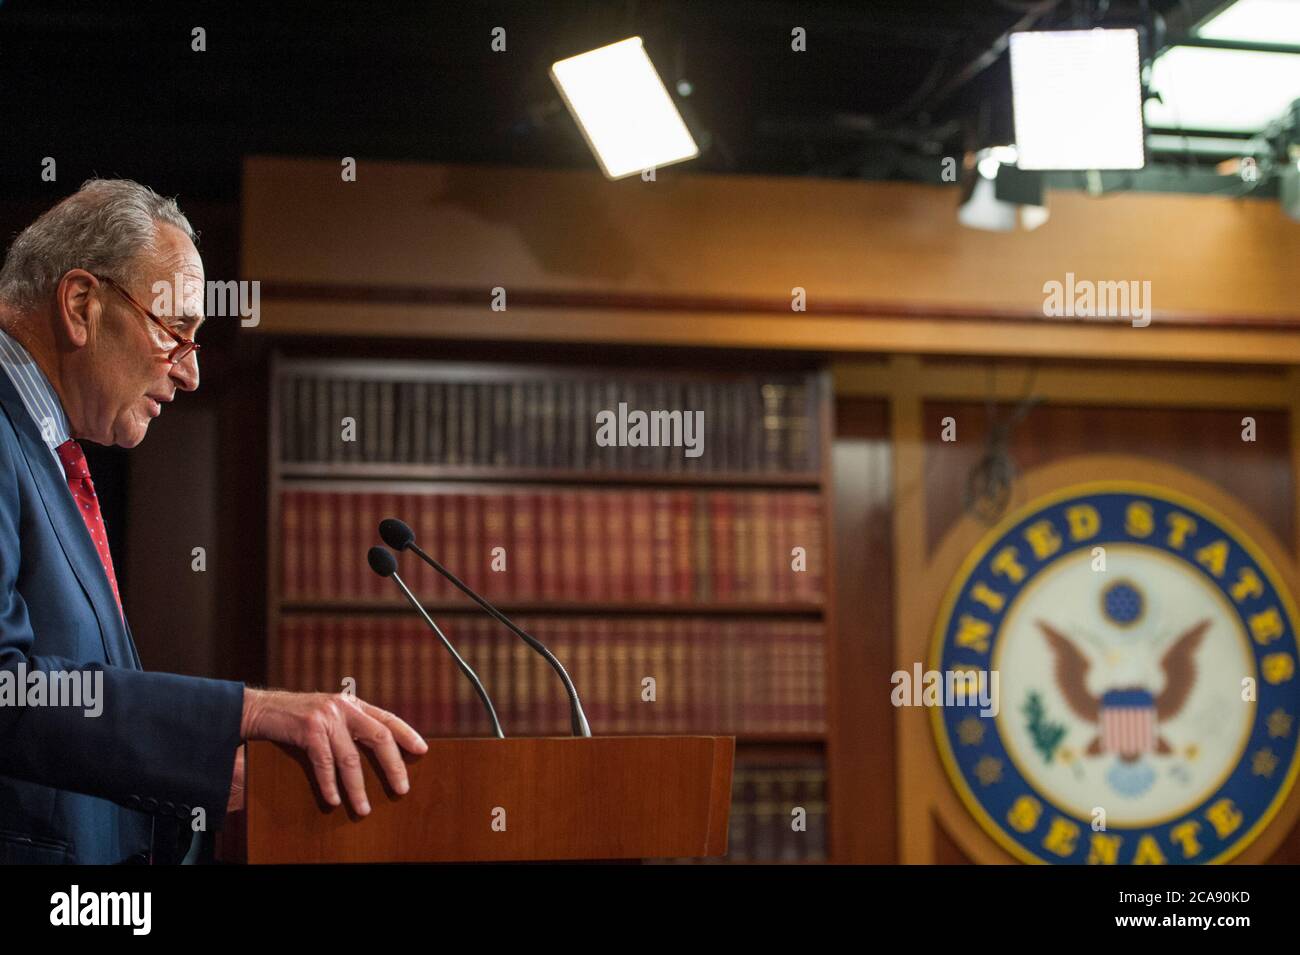 Der Minderheitsführer des Senats der Vereinigten Staaten, Chuck Schumer (Demokrat von New York), hält während einer Pressekonferenz im US-Kapitol in Washington, DC, am Dienstag, den 4. August 2020, Bemerkungen zu den laufenden Verhandlungen mit dem Konjunkturpaket COVID-19. Kredit: Rod Lampey/CNP /MediaPunch Stockfoto